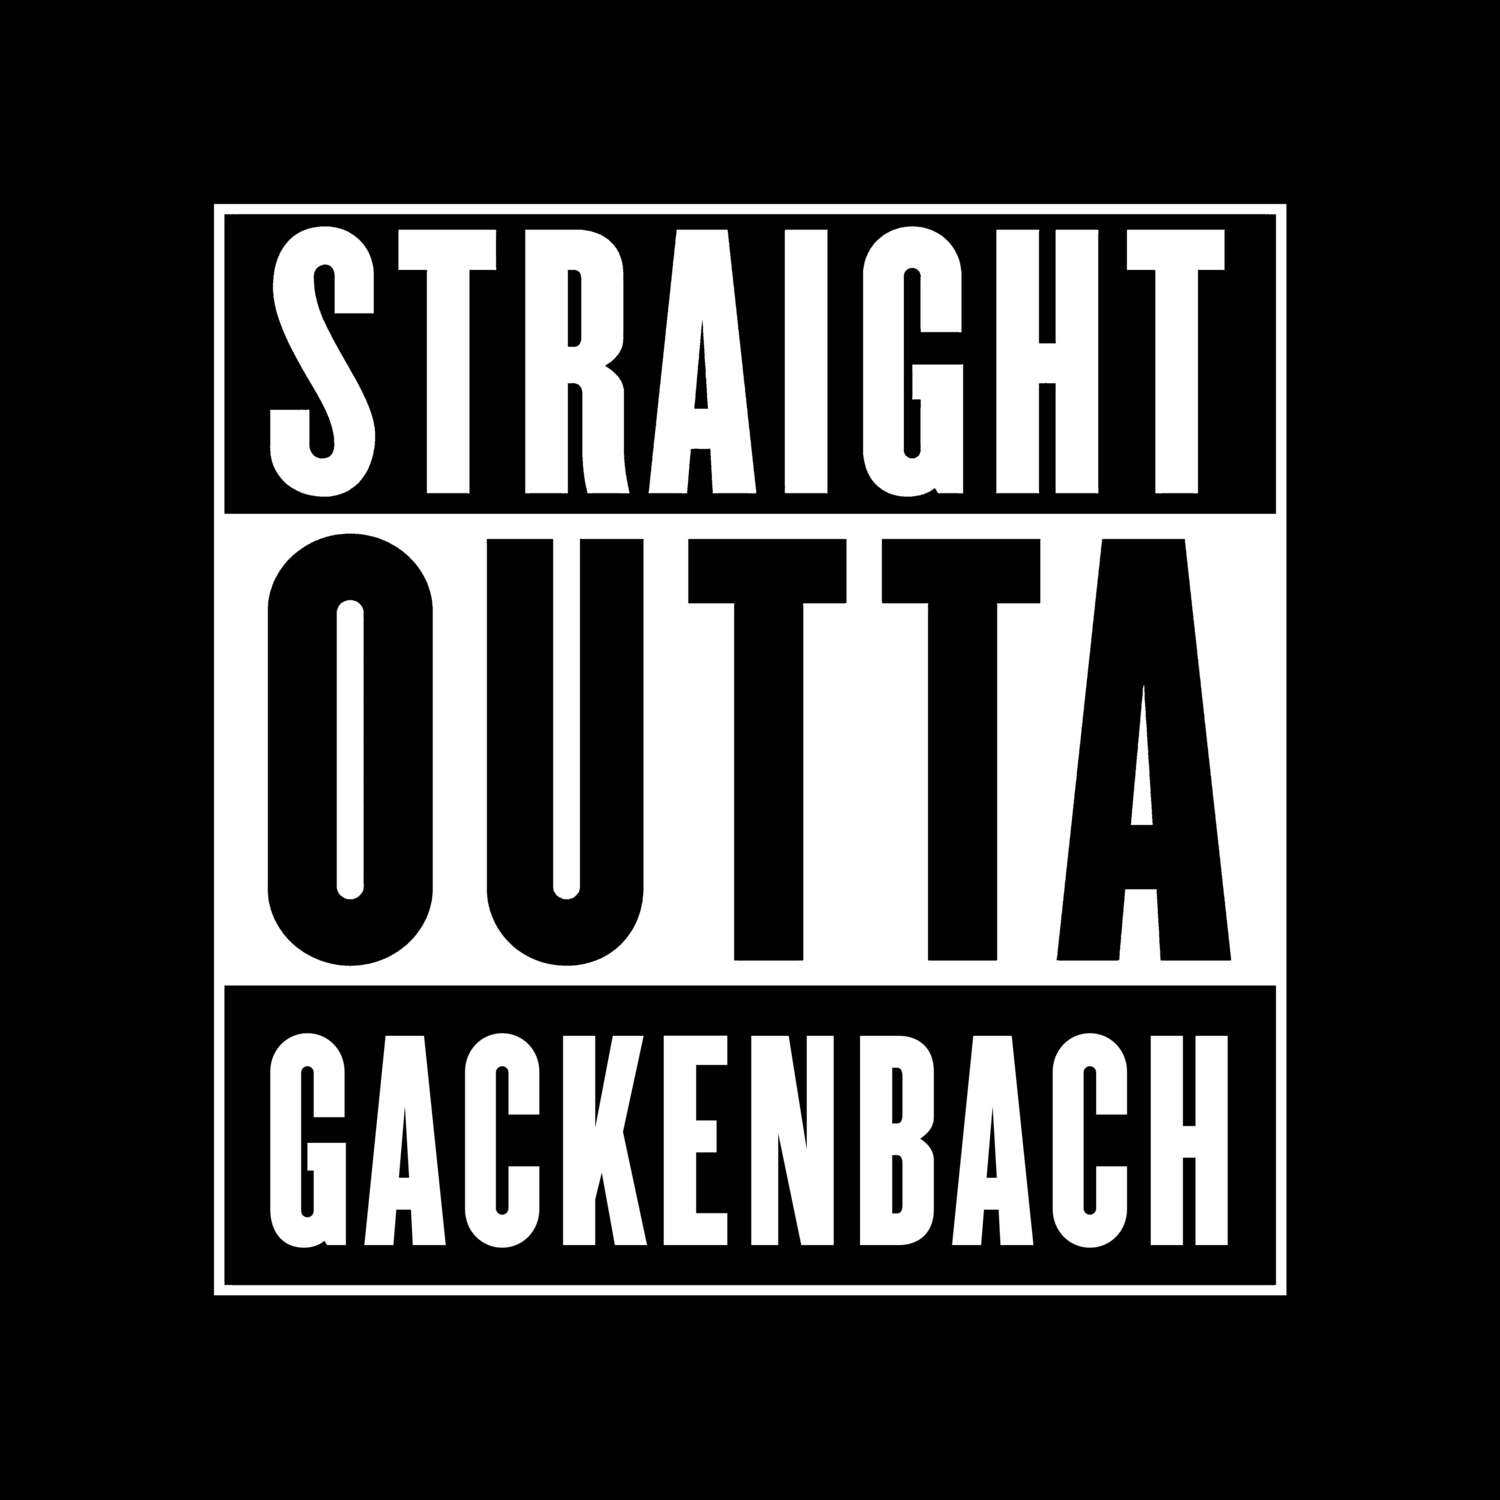 Gackenbach T-Shirt »Straight Outta«